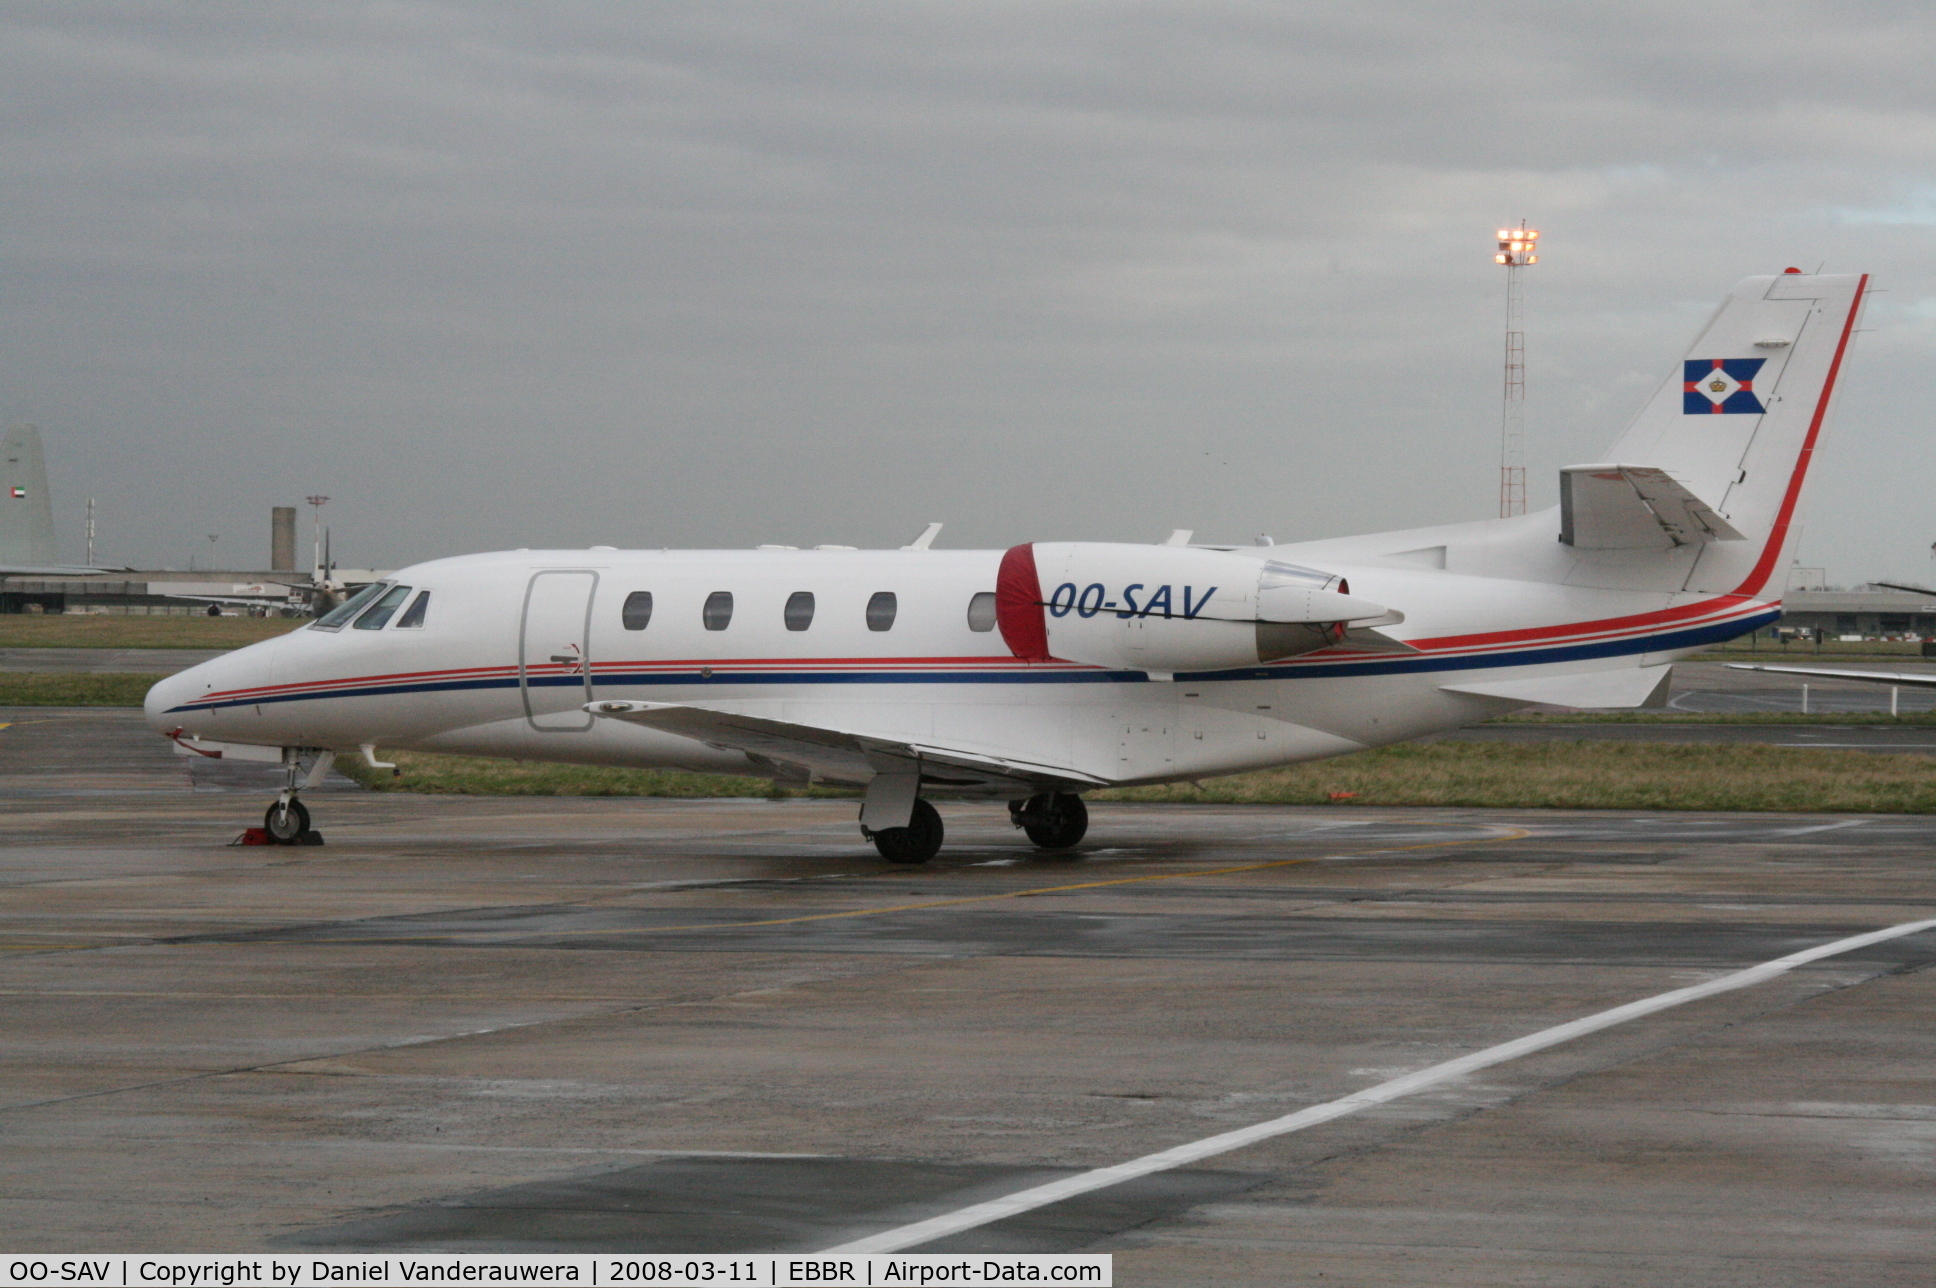 OO-SAV, 2001 Cessna 560XL Citation Excel C/N 560-5189, parked on General Aviation apron (Abelag)